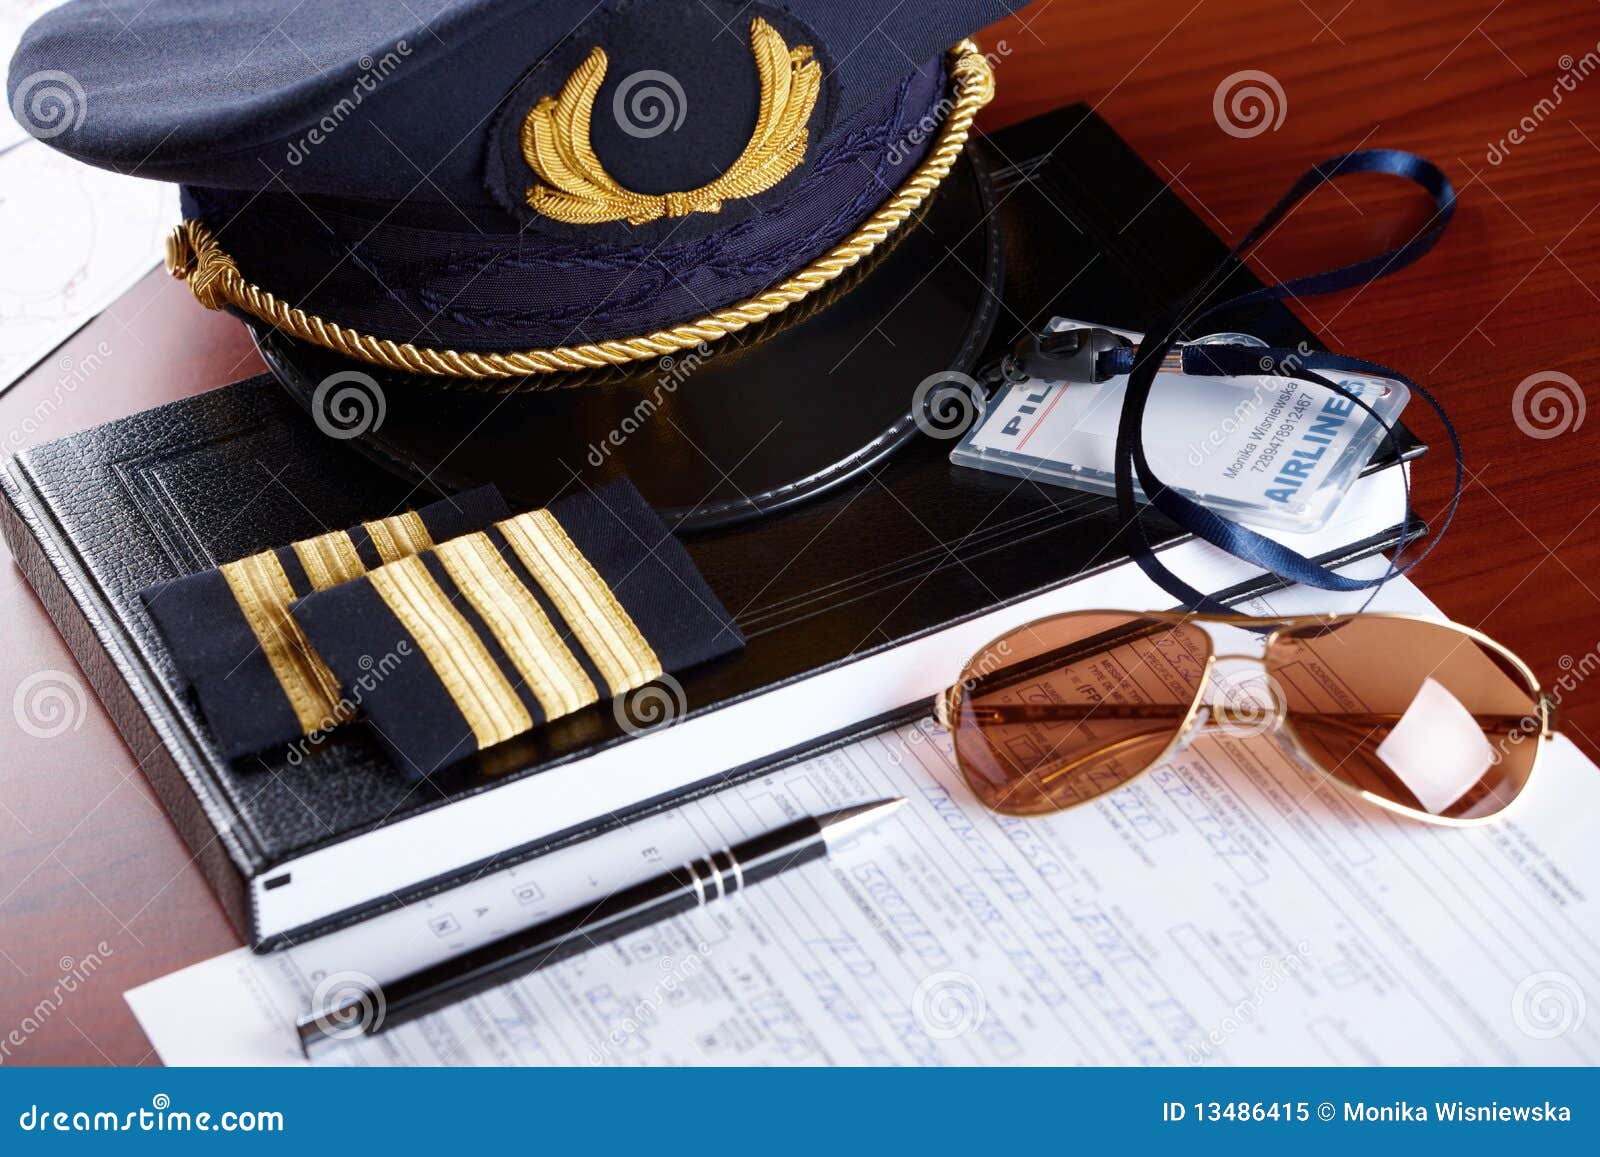 professional airline pilot equipment